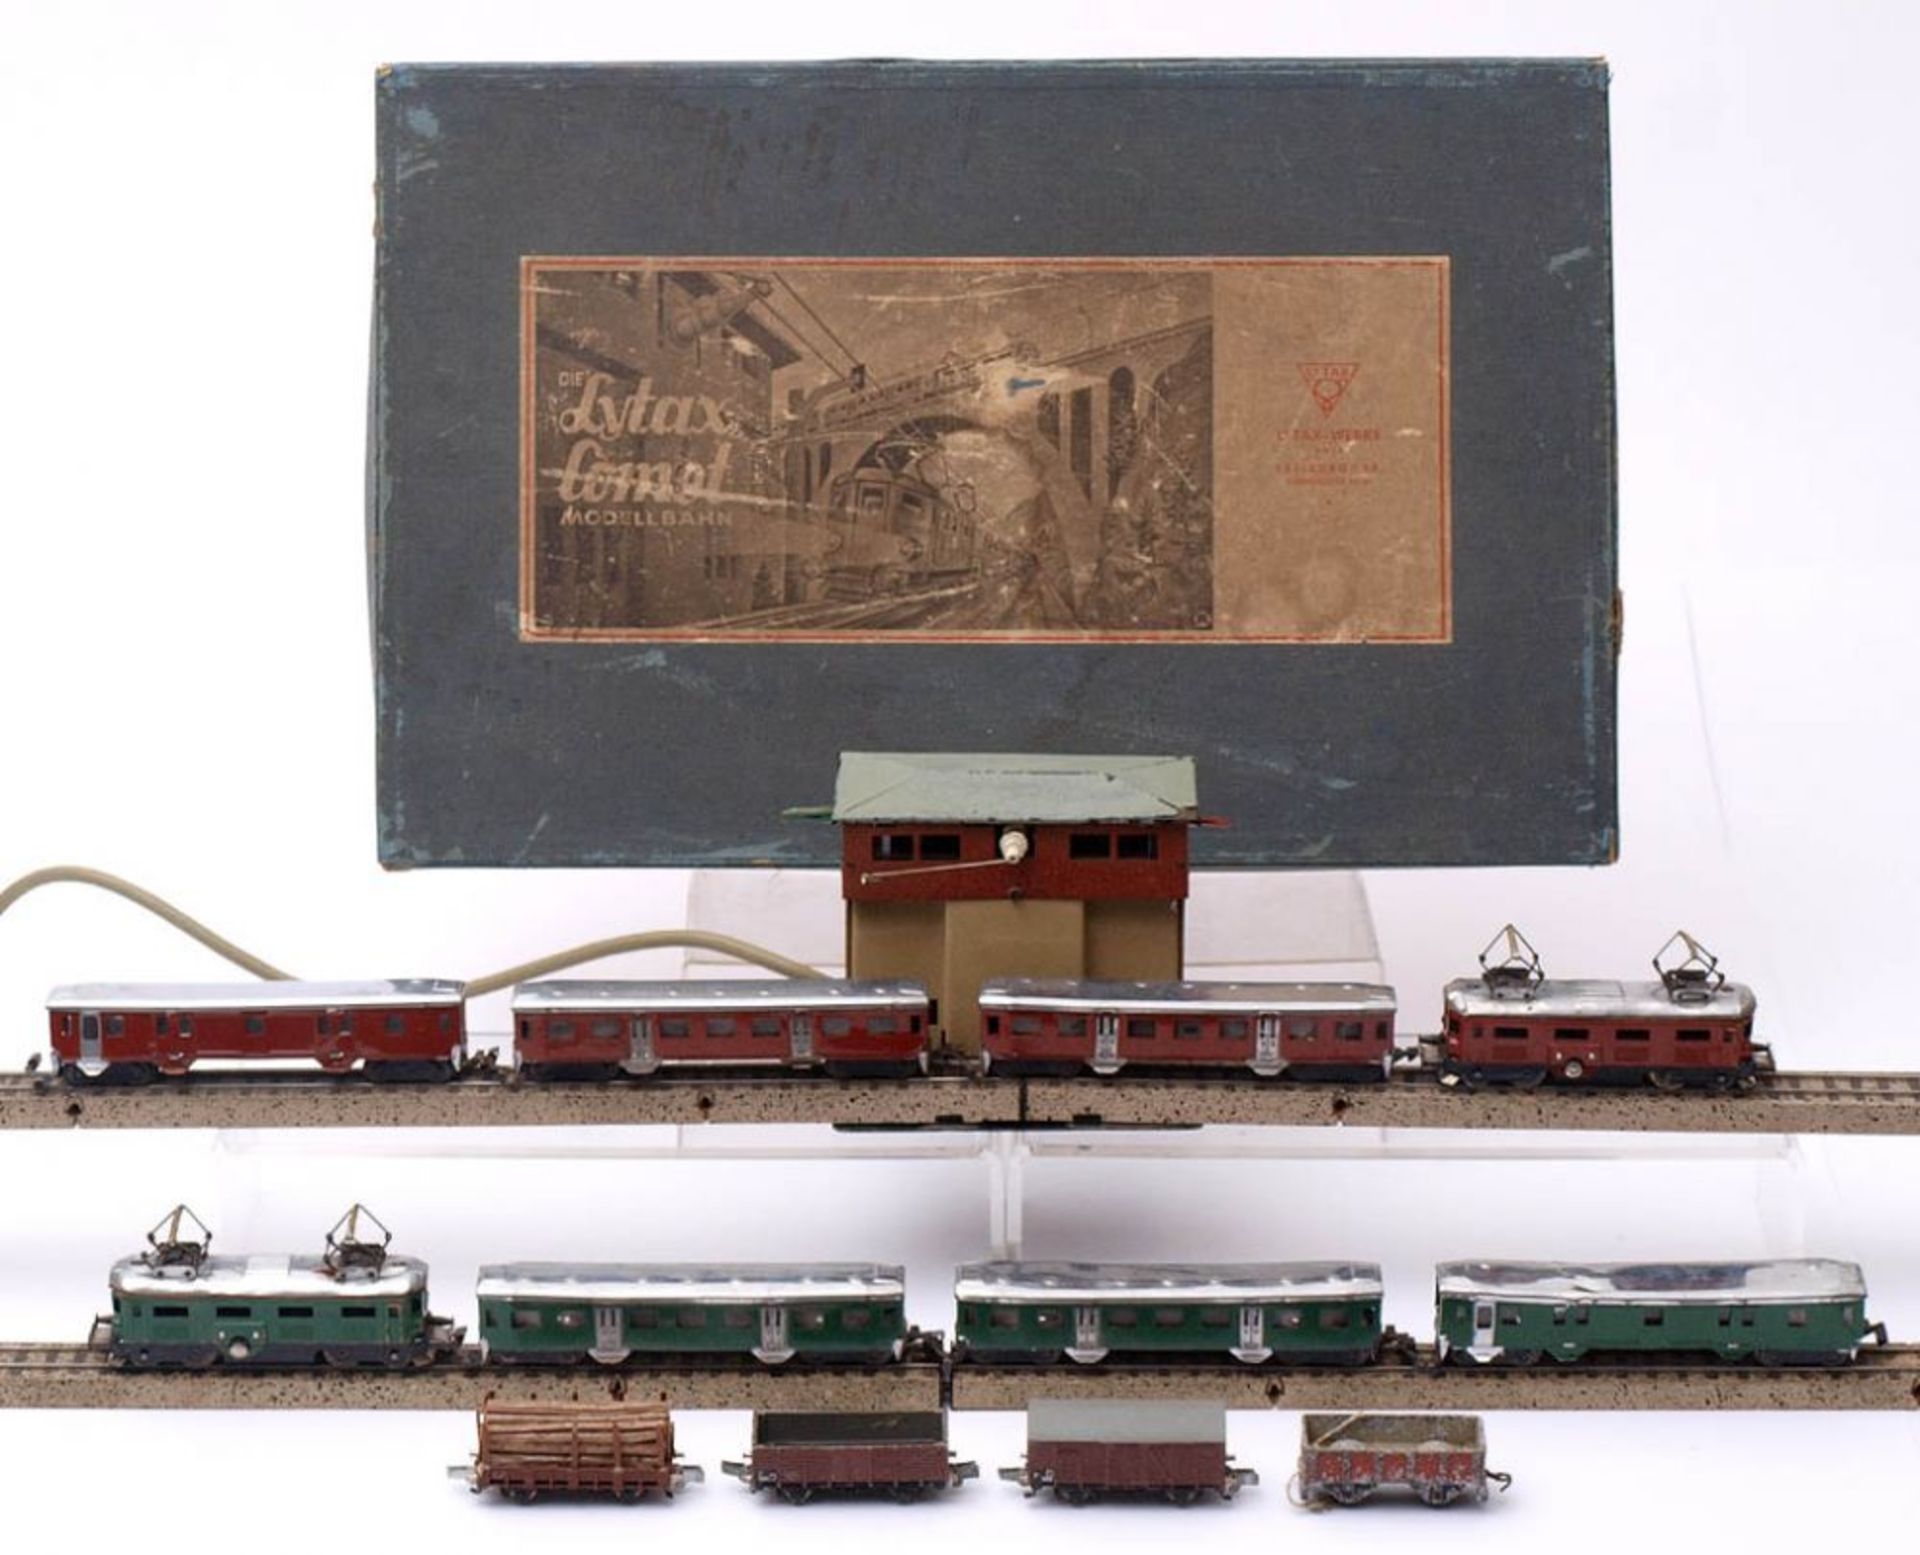 Eisenbahnanlage, Lytax Comet, 1946-48 Originalkarton mit zwei Loks, vier Personenwagen, zwei